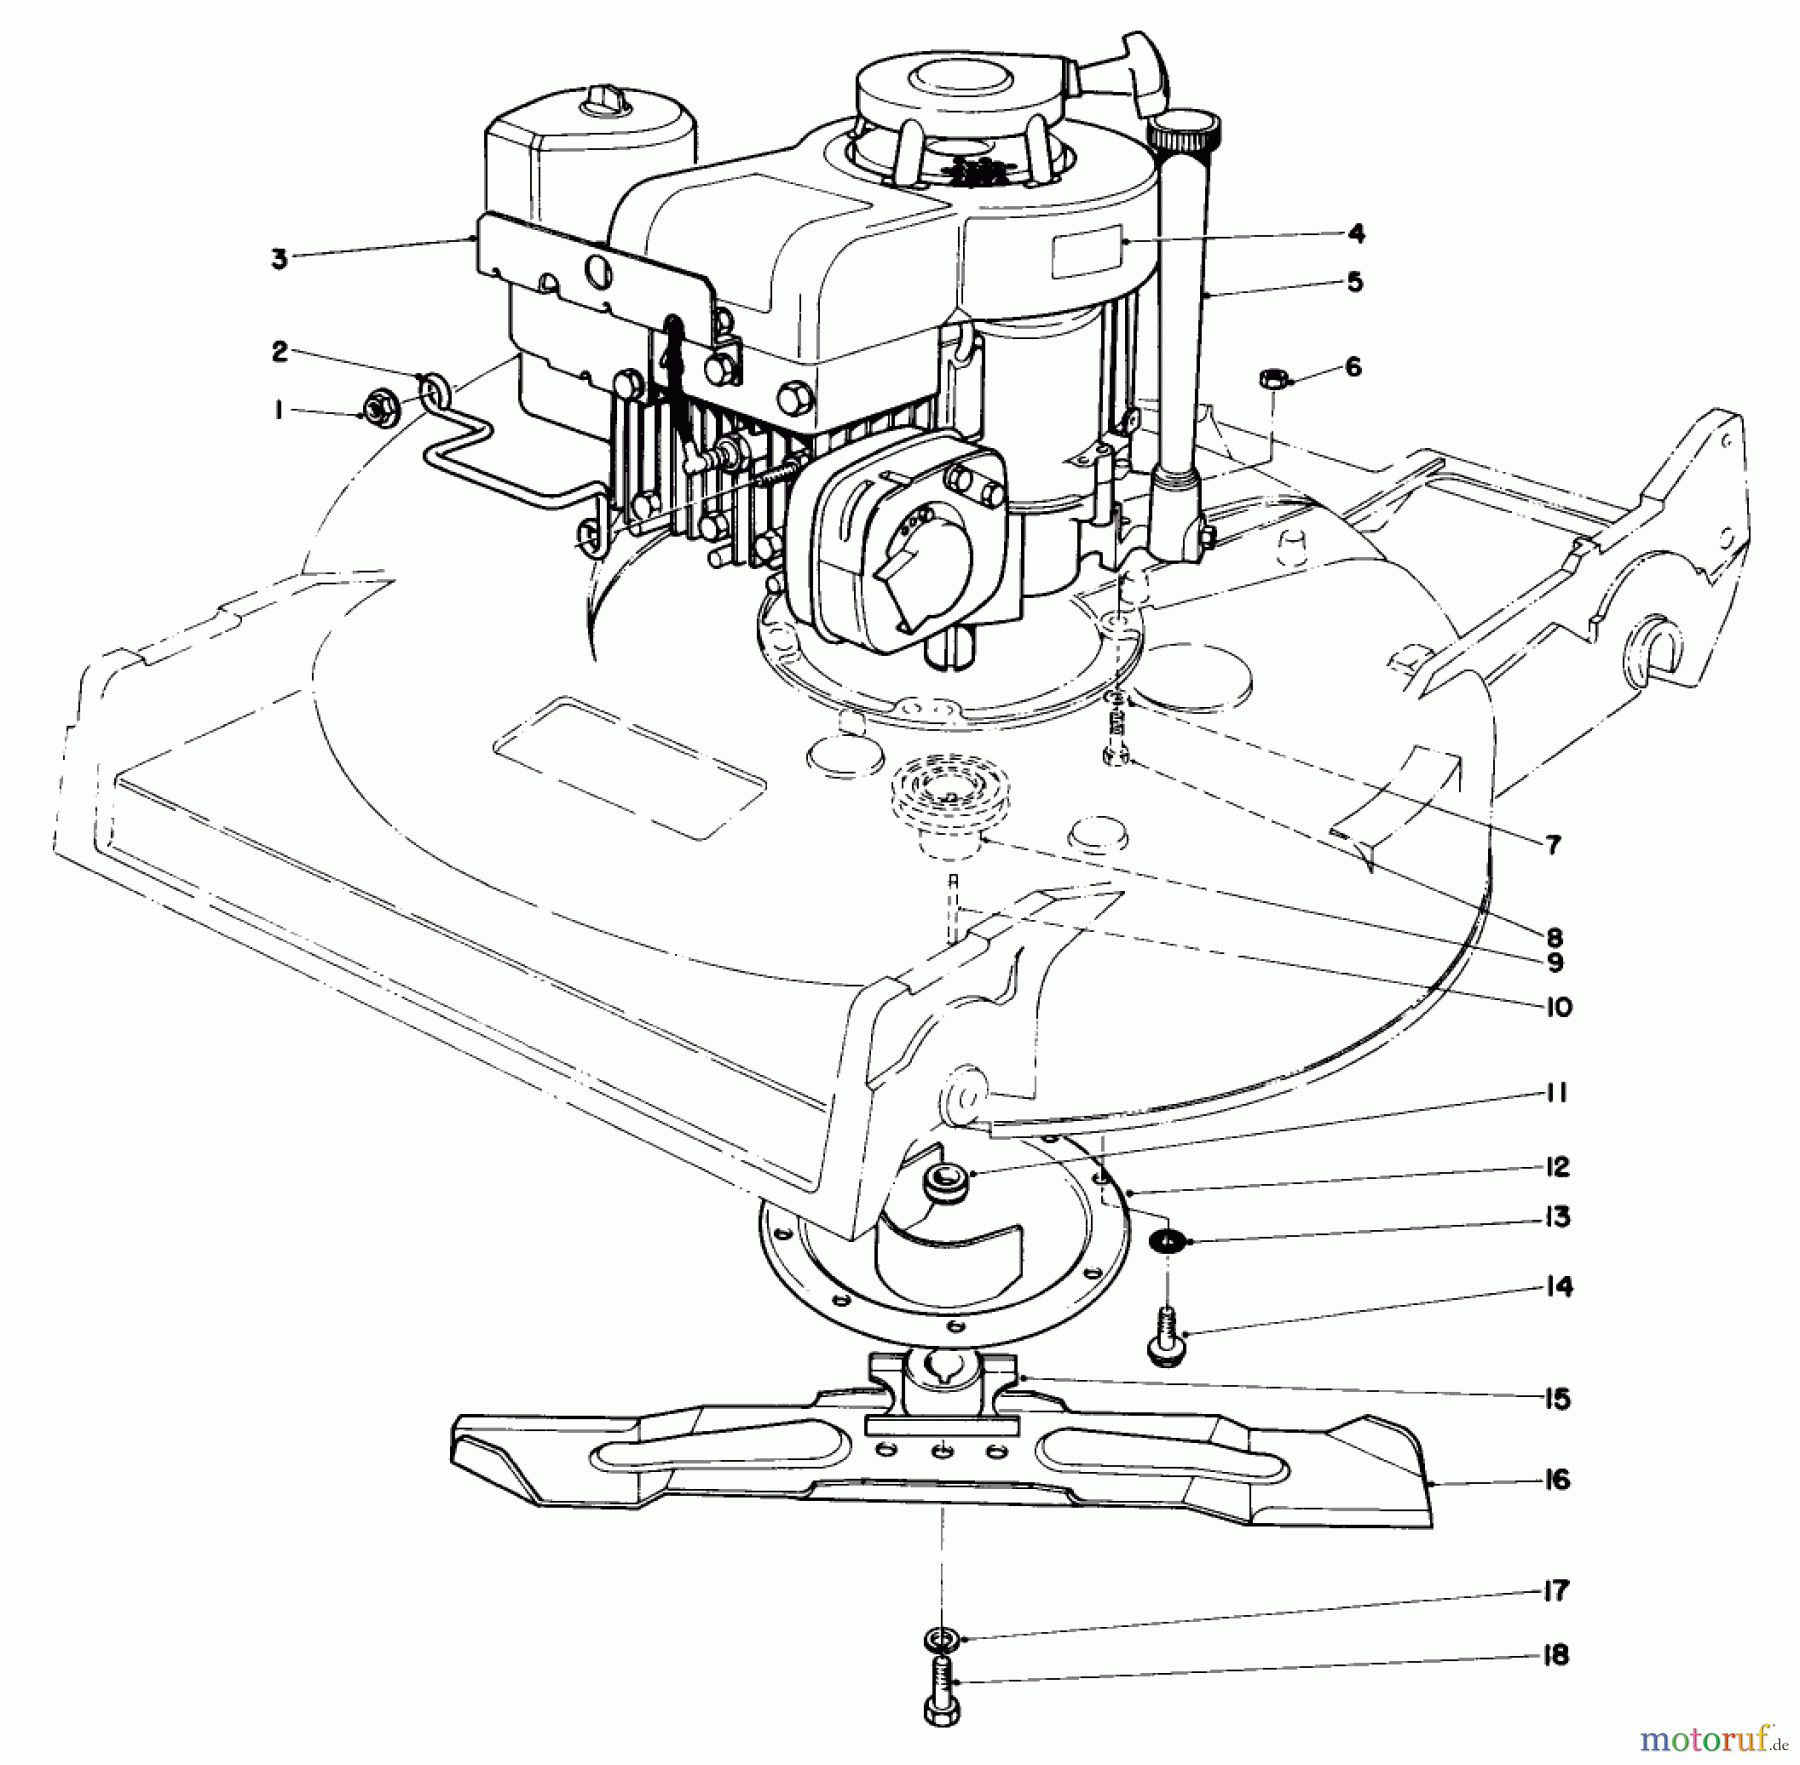  Toro Neu Mowers, Walk-Behind Seite 2 22015 - Toro Lawnmower, 1985 (5000001-5999999) ENGINE ASSEMBLY (MODEL 22020)